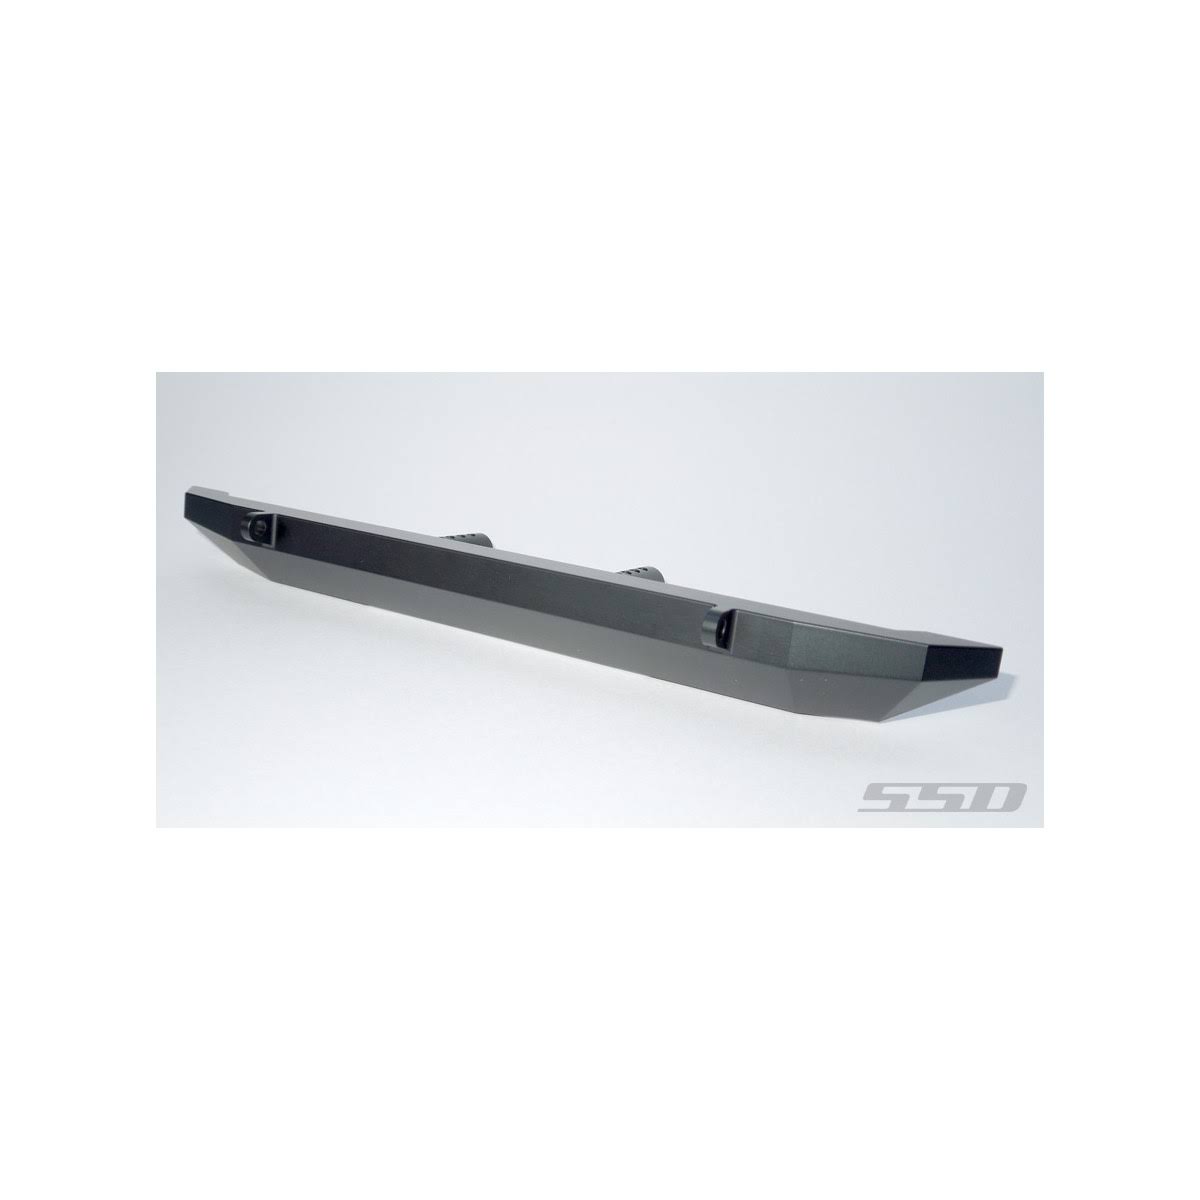 SSD RC Scx10 III Rock Shield Rear Bumper | Hobbytech Toys